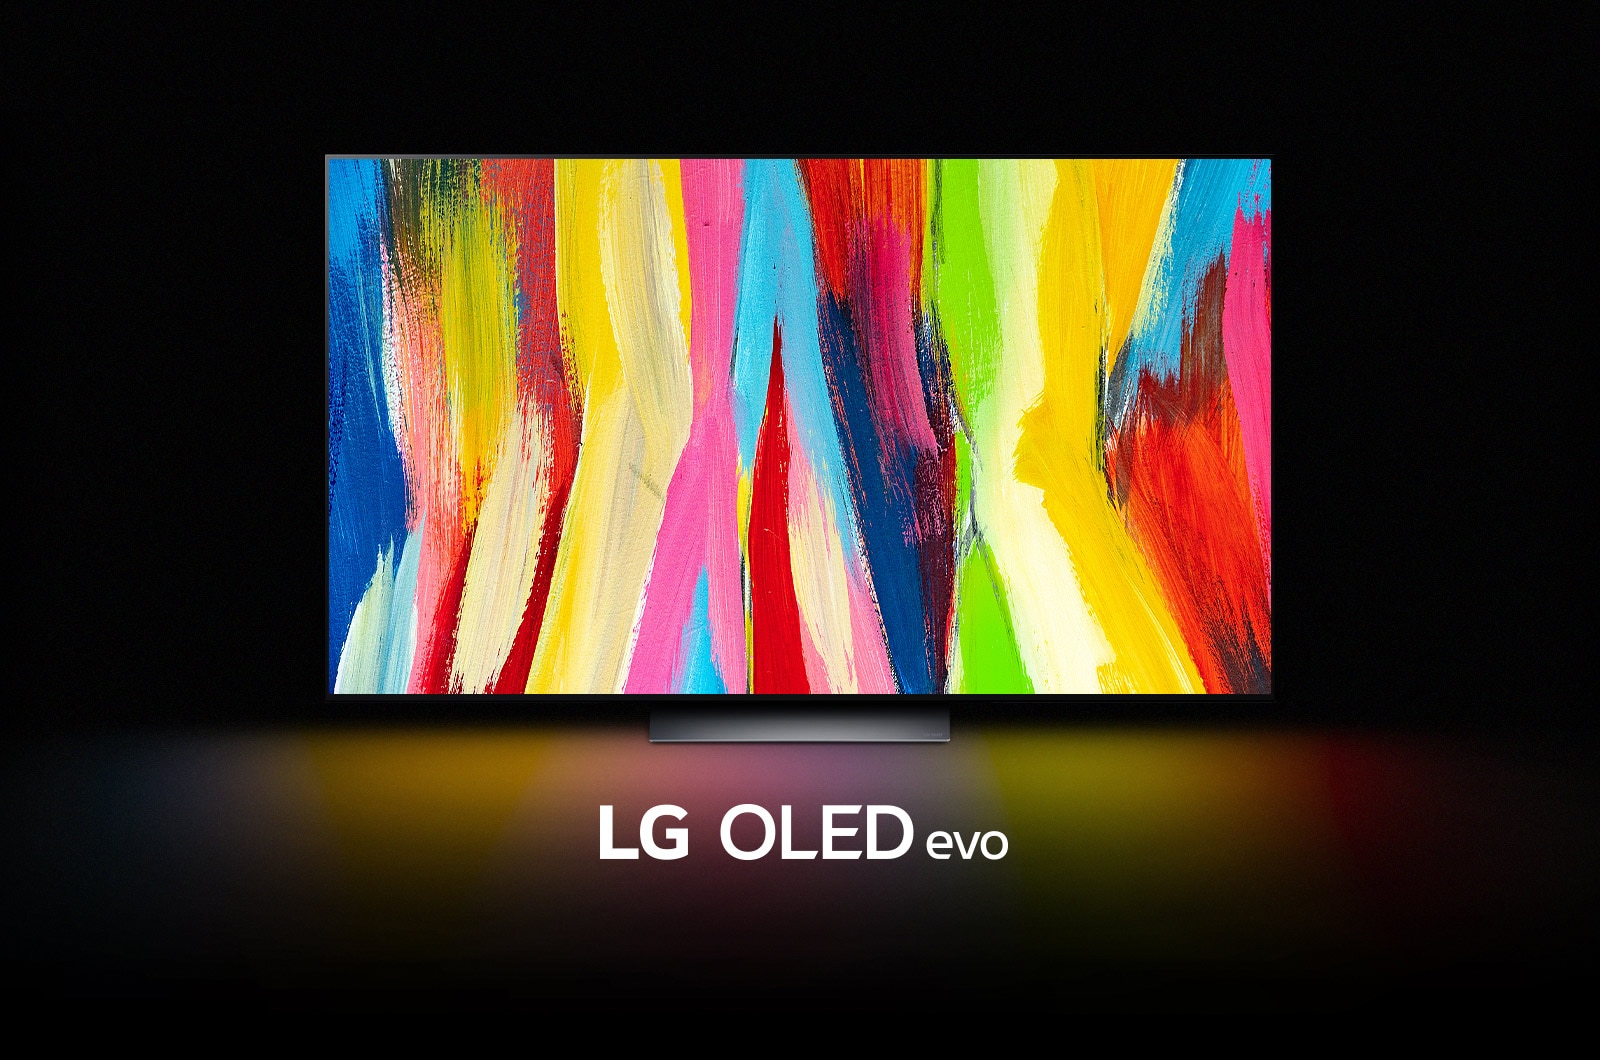 LG OLED C2 в темной комнате с красочной абстрактной картиной с вертикальными линиями на дисплее и надписью "LG OLED evo" под ней.